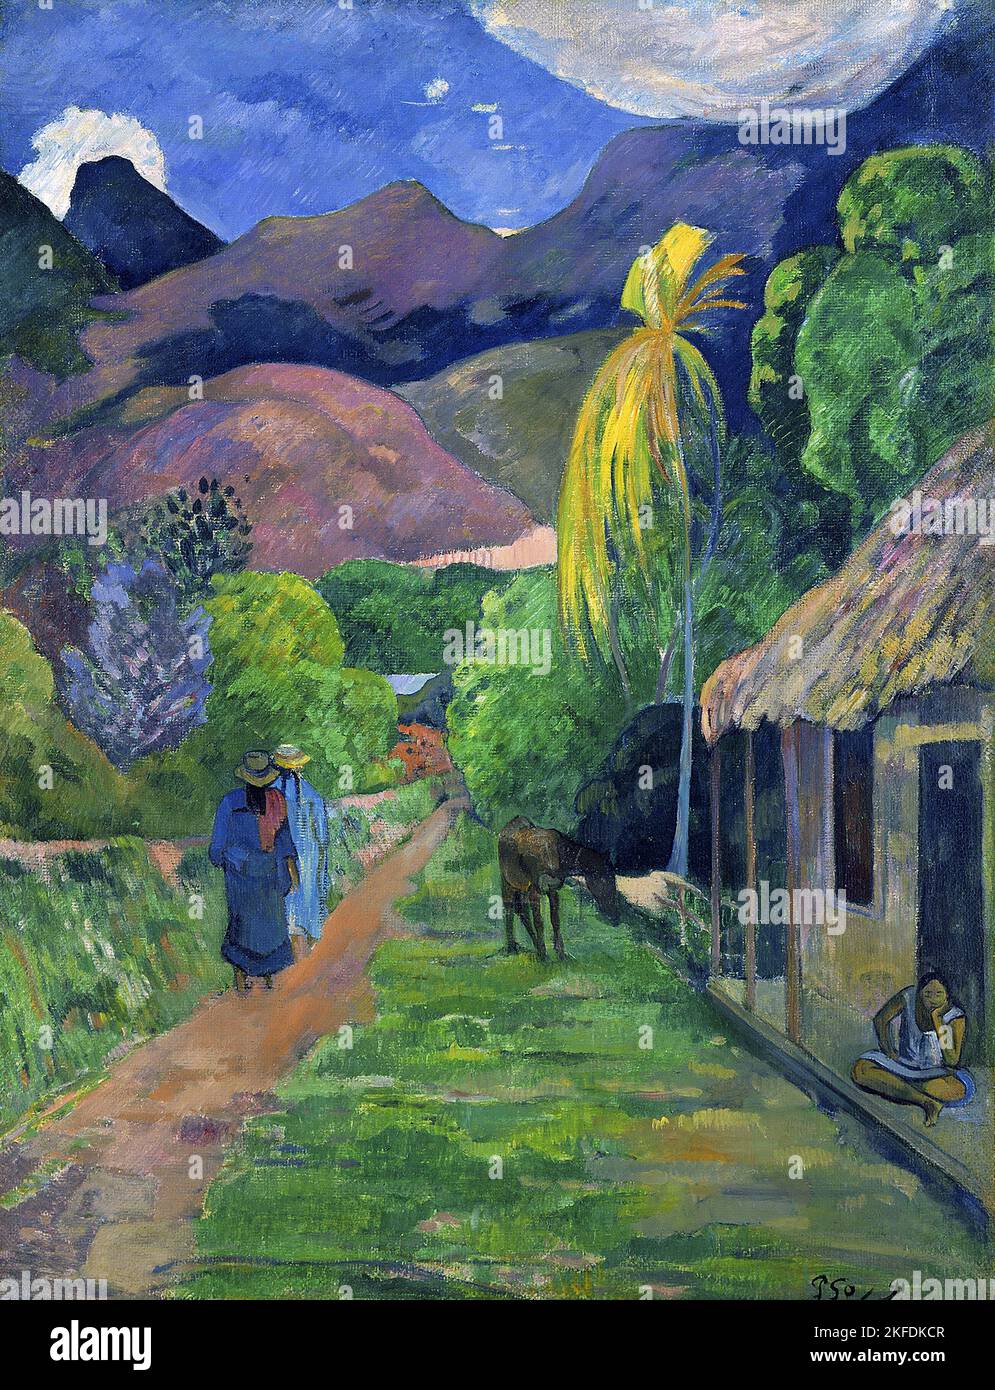 Tahiti : rue de Tahiti (rue de Tahiti). Peinture à l'huile sur toile par Paul Gauguin (7 juin 1848 - 8 mai 1903), 1891. Paul Gauguin est né à Paris en 1848 et a passé une partie de son enfance au Pérou. Il a travaillé comme courtier en Bourse avec peu de succès et a souffert de crises de dépression grave. Il a également peint. En 1891, Gauguin, frustré par le manque de reconnaissance à la maison et financièrement indigente, navigue vers les tropiques pour échapper à la civilisation européenne et "tout ce qui est artificiel et conventionnel". Son temps il y avait le sujet de beaucoup d'intérêt à l'époque et dans les temps modernes. Banque D'Images